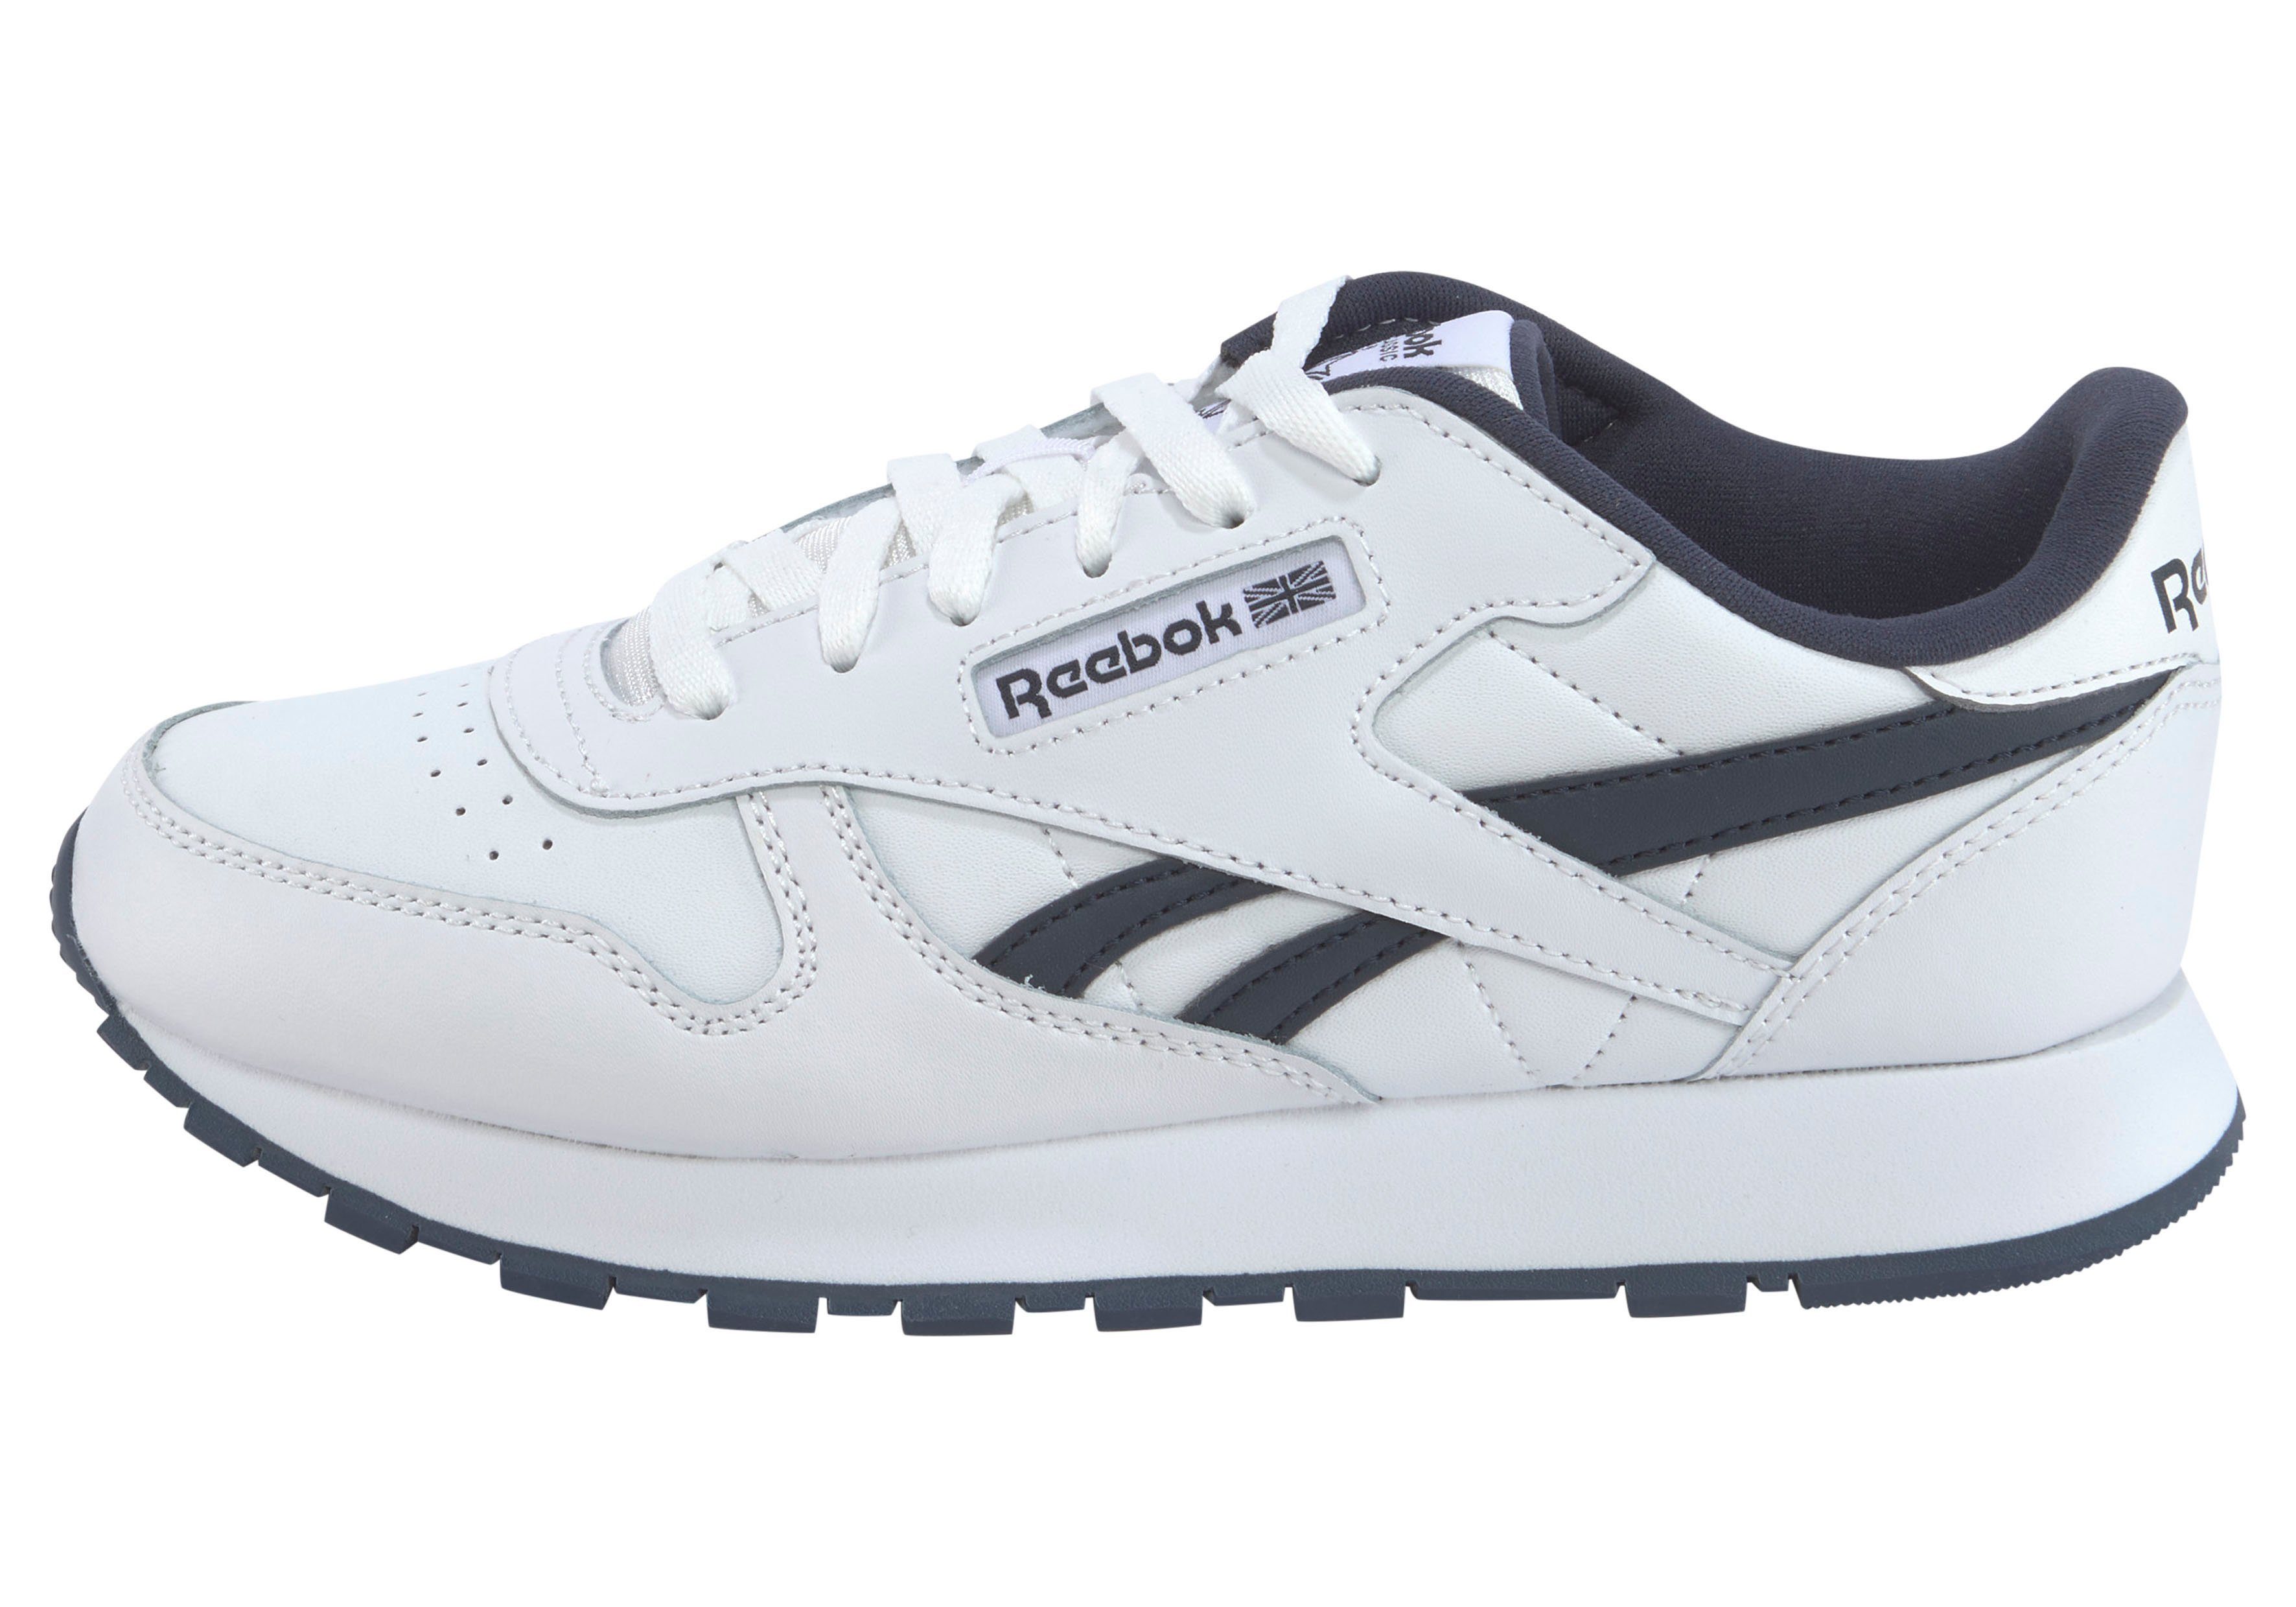 Classic CLASSIC weiß-schwarz LEATHER Sneaker Reebok